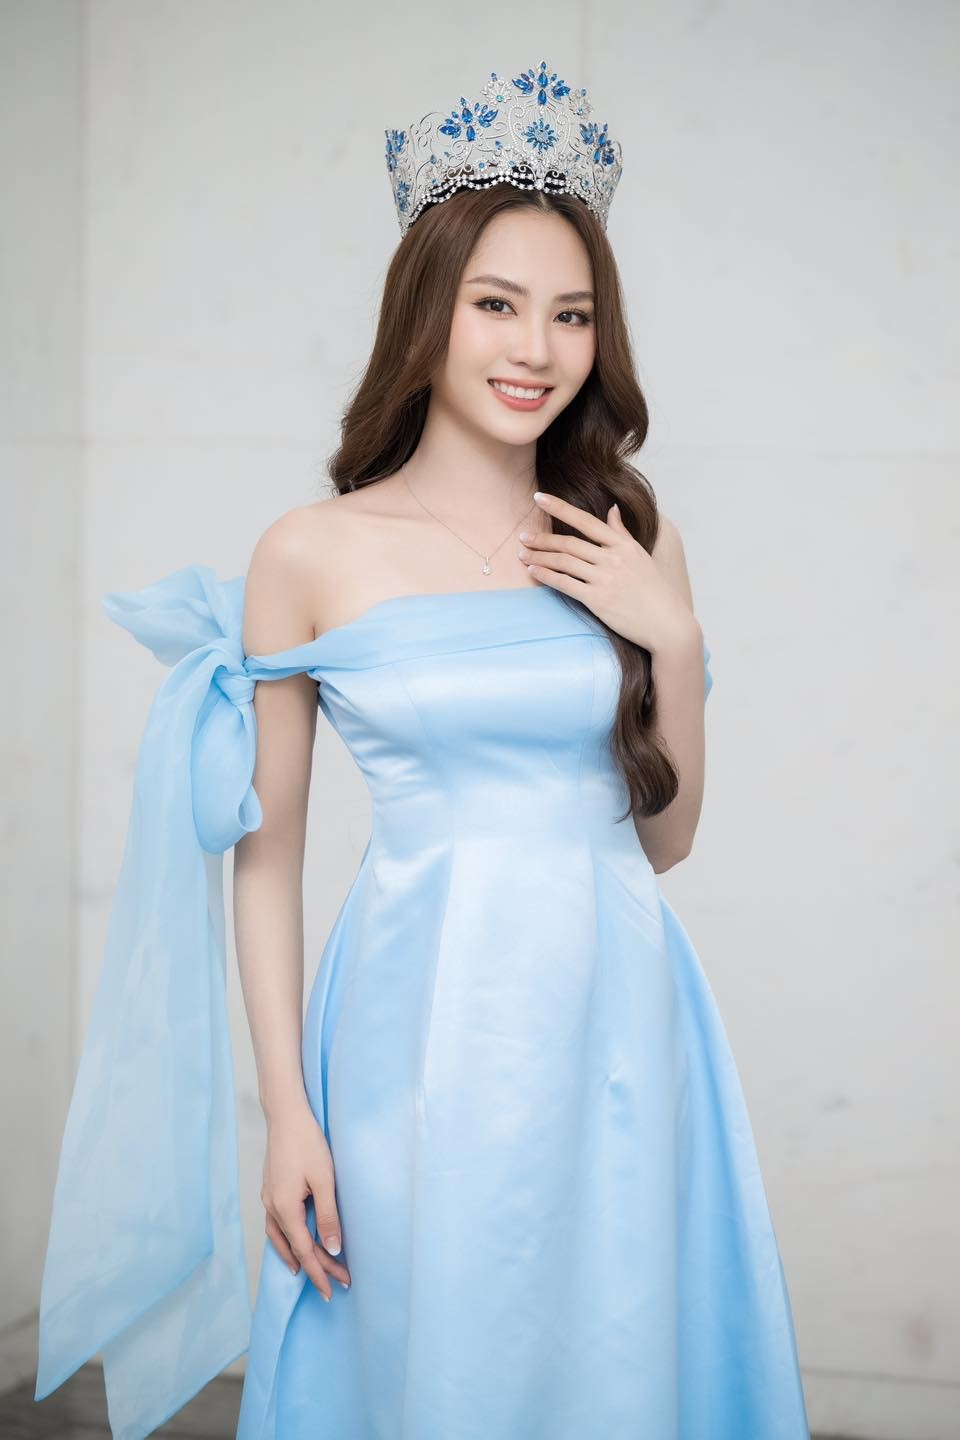 Sao Việt: Hoa hậu Mai Phương khoe vai trần gợi cảm, Hariwon đăng ảnh mặc áo cưới